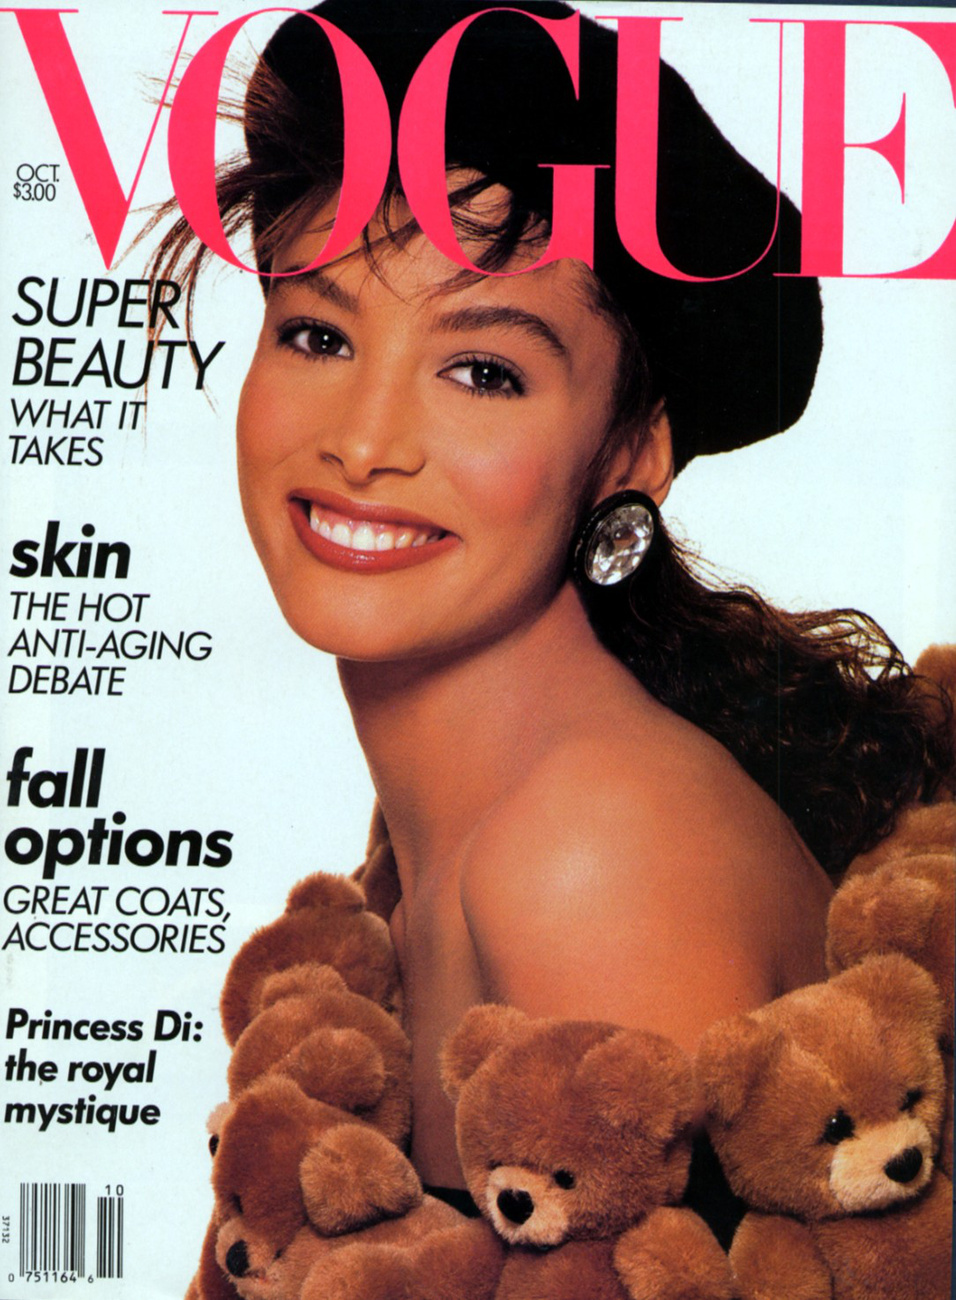 A leginkább üzletasszonyként ismert Shelia Johnson a Vogue címlapján 1980-ban.